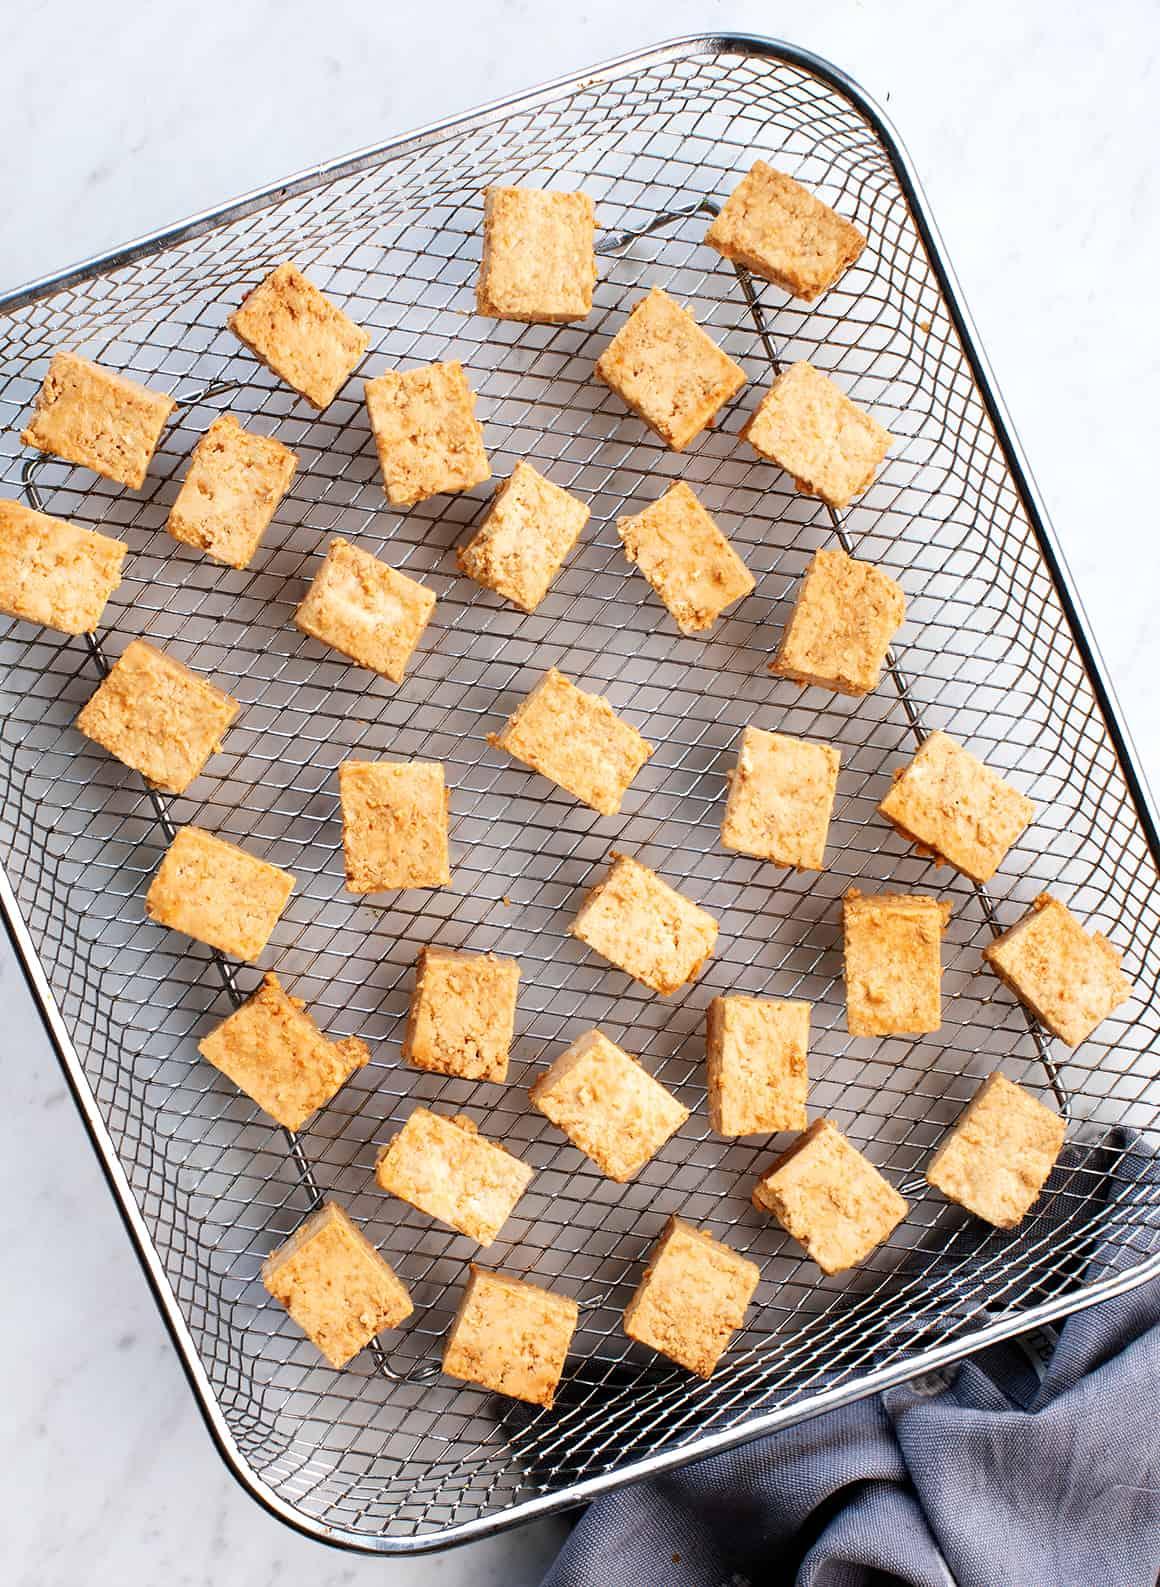 Cubed tofu in air fryer basket